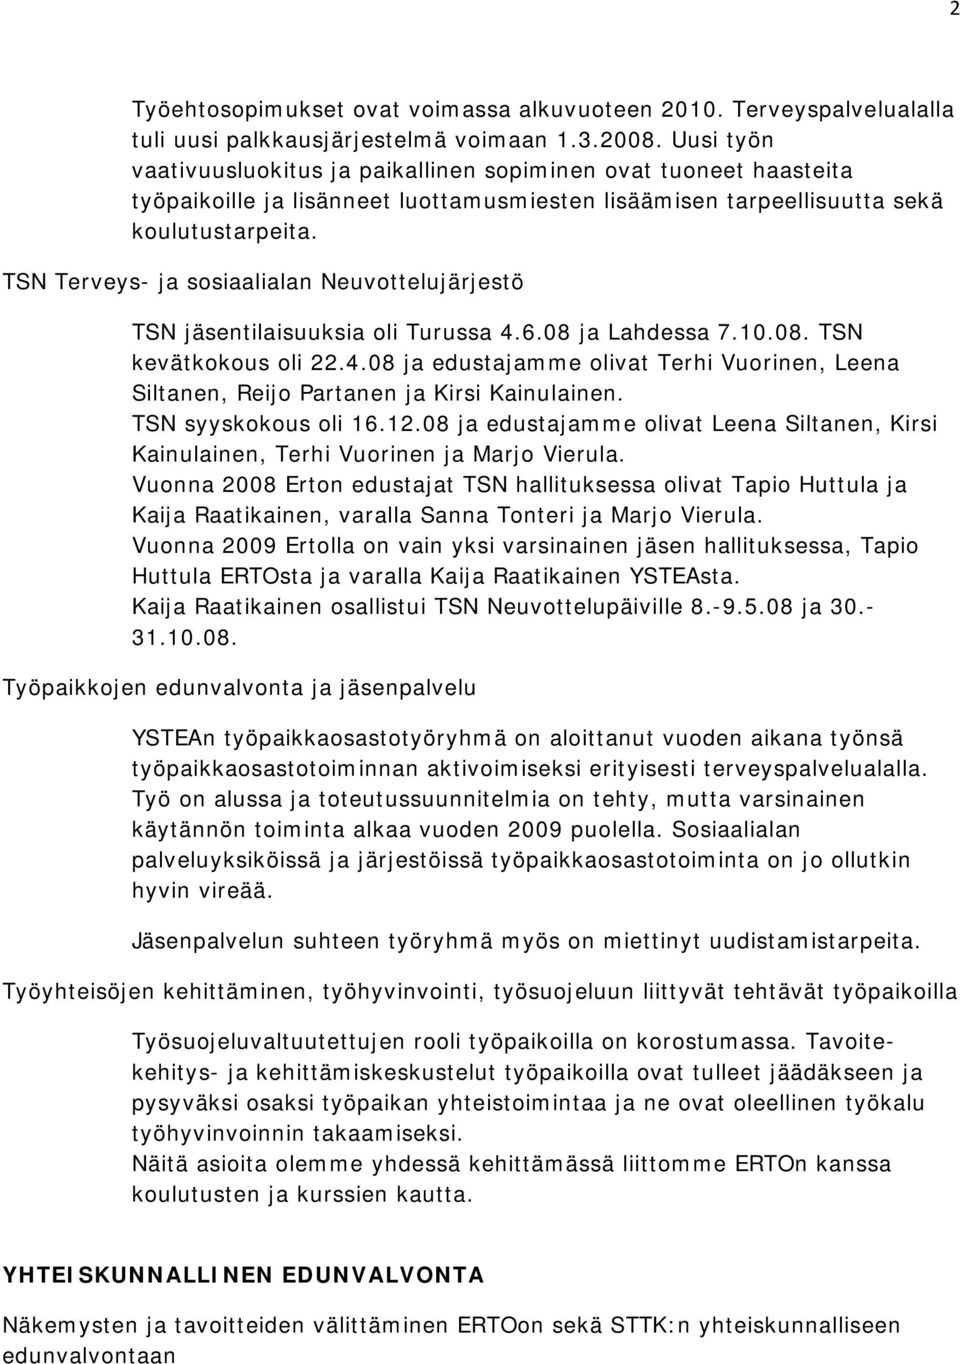 TSN Terveys- ja sosiaalialan Neuvottelujärjestö TSN jäsentilaisuuksia oli Turussa 4.6.08 ja Lahdessa 7.10.08. TSN kevätkokous oli 22.4.08 ja edustajamme olivat Terhi Vuorinen, Leena Siltanen, Reijo Partanen ja Kirsi Kainulainen.